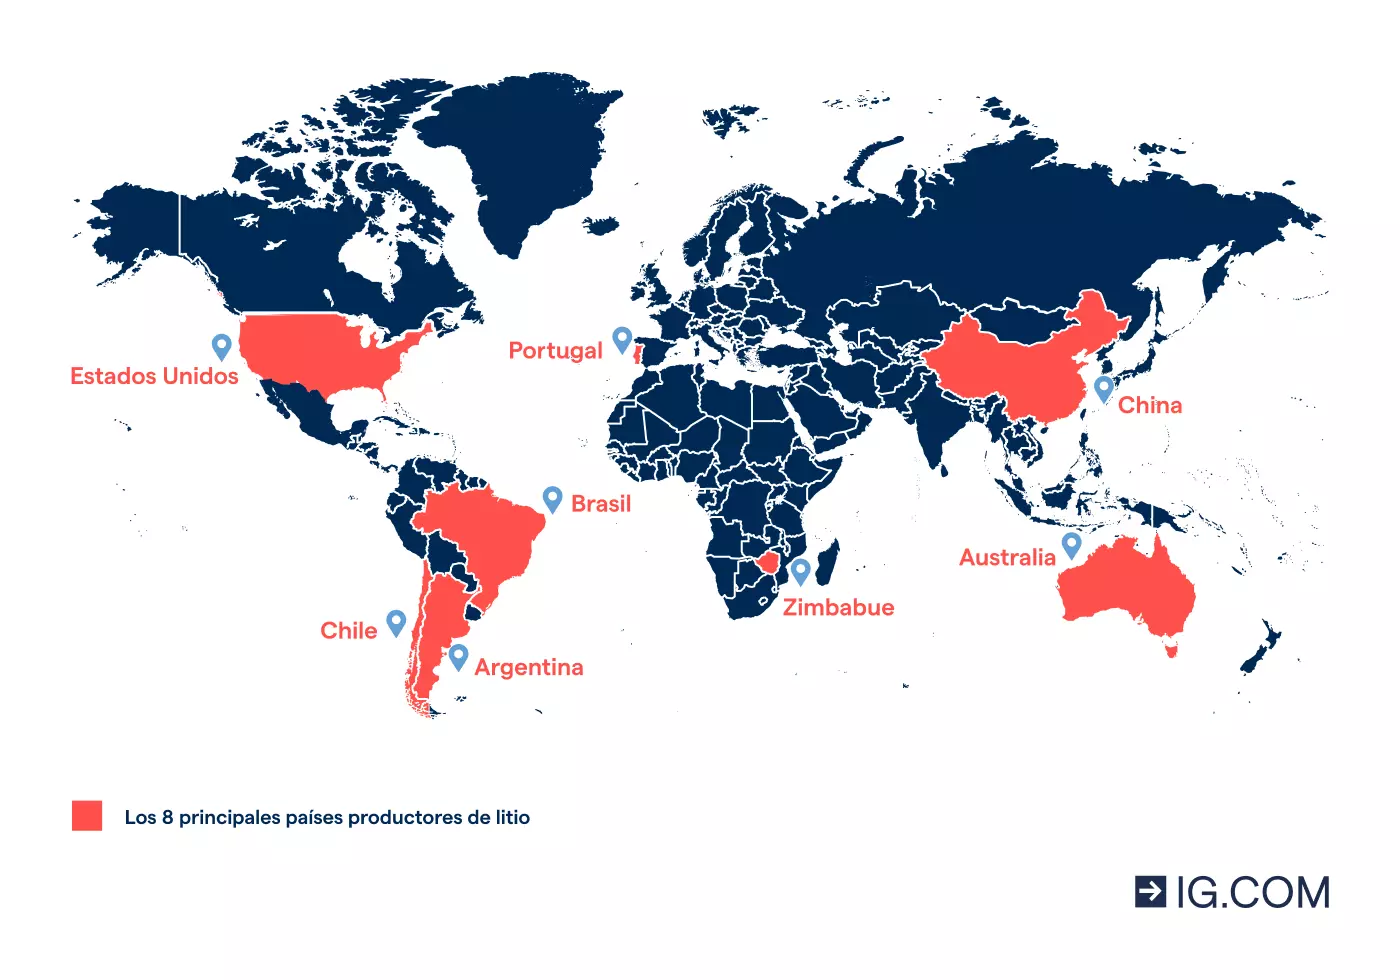 Imagen del mapa mundial en el que se señalan los 8 principales países productores de litio del mundo.